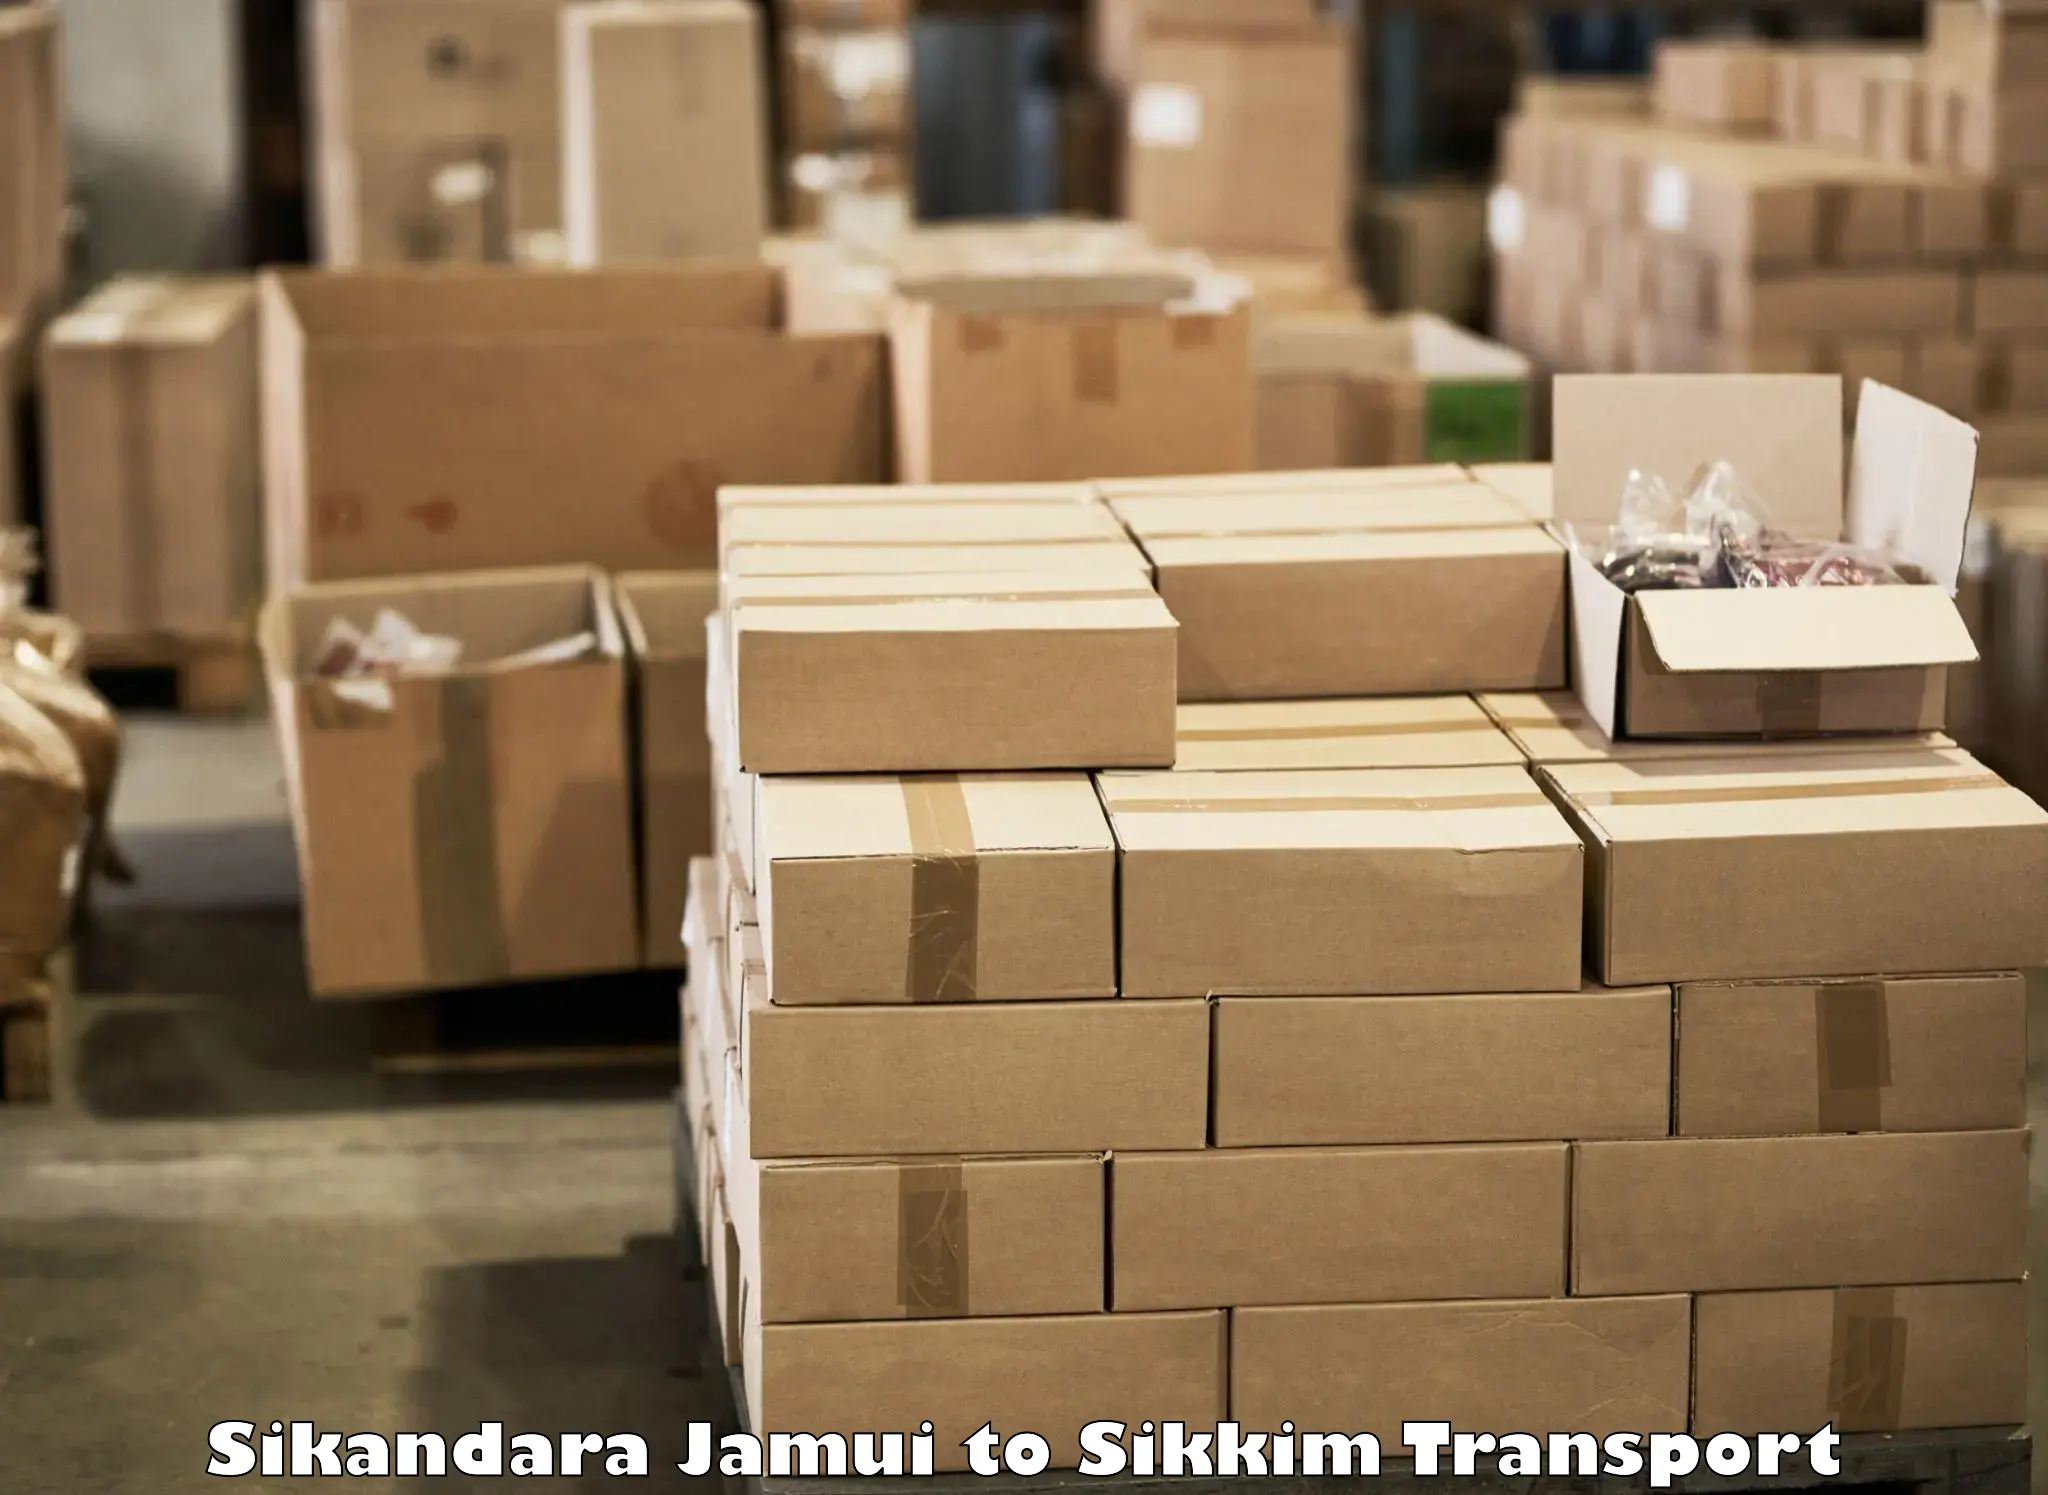 Transport in sharing Sikandara Jamui to Namchi